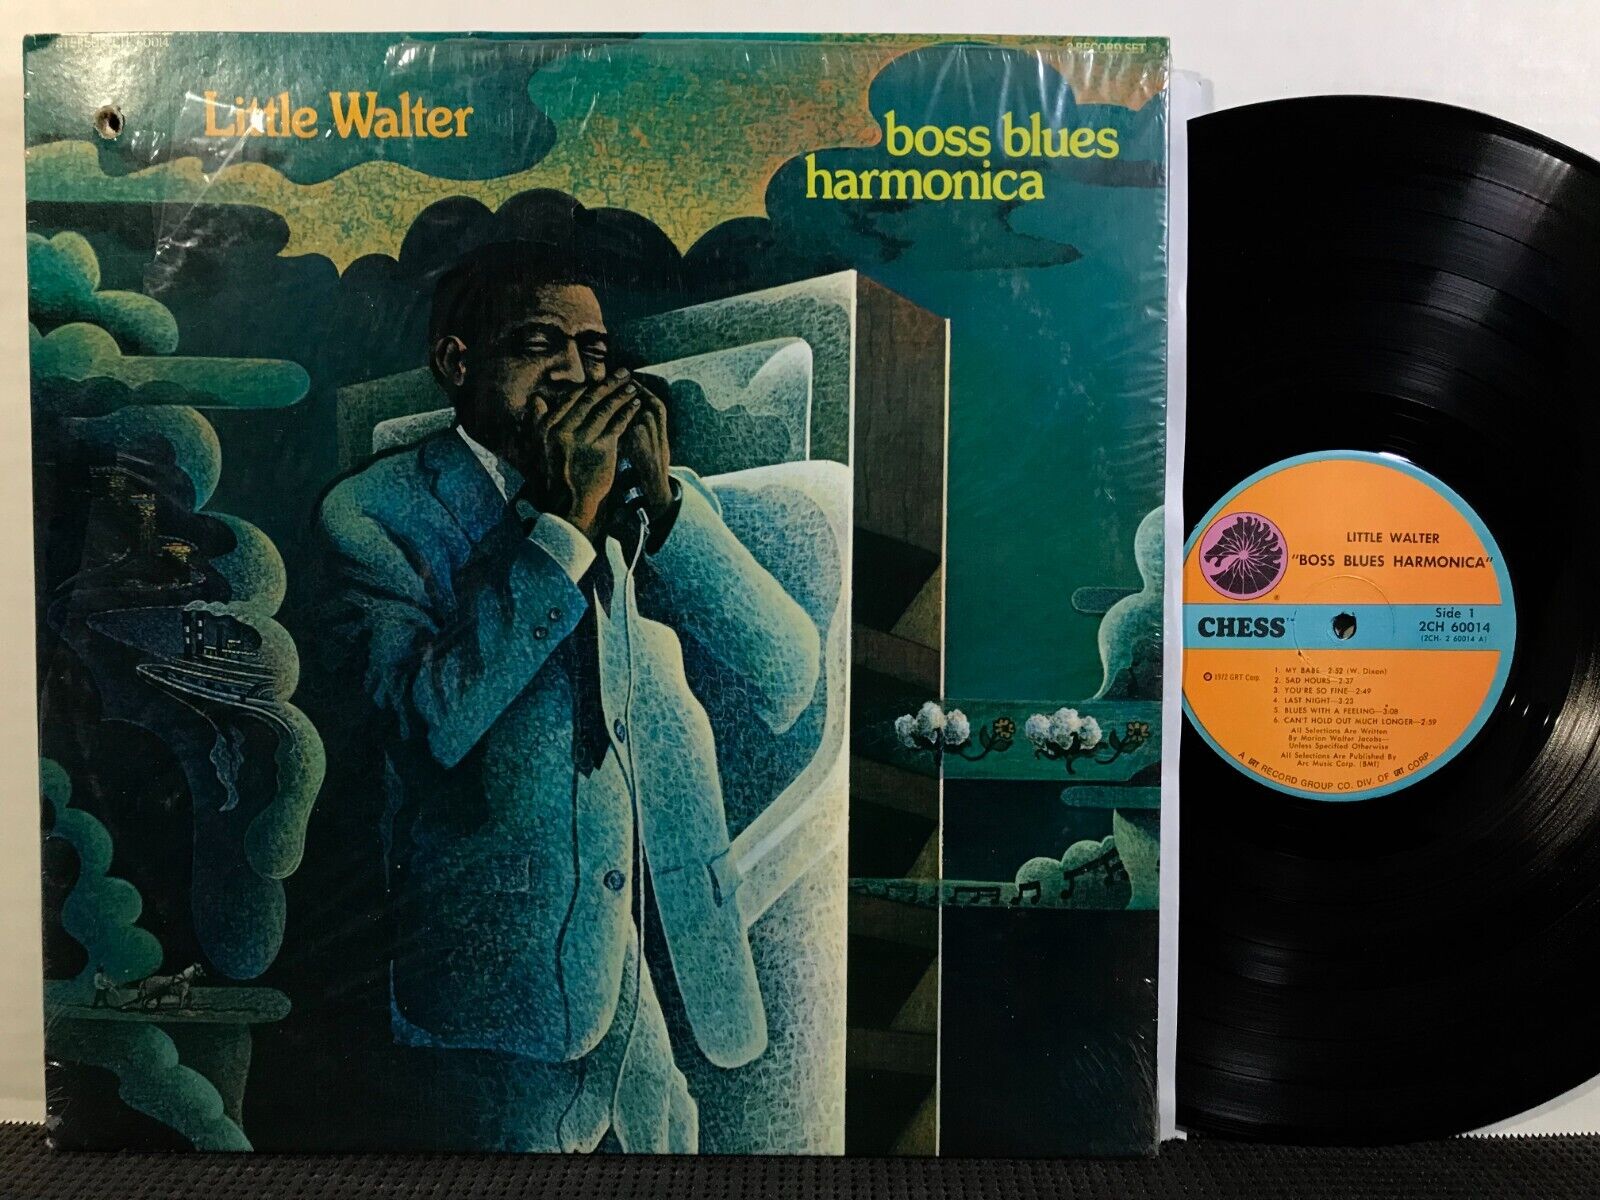 LITTLE WALTER Boss Blues Harmonica 2 LP CHESS 2CH 60014 STEREO 1972